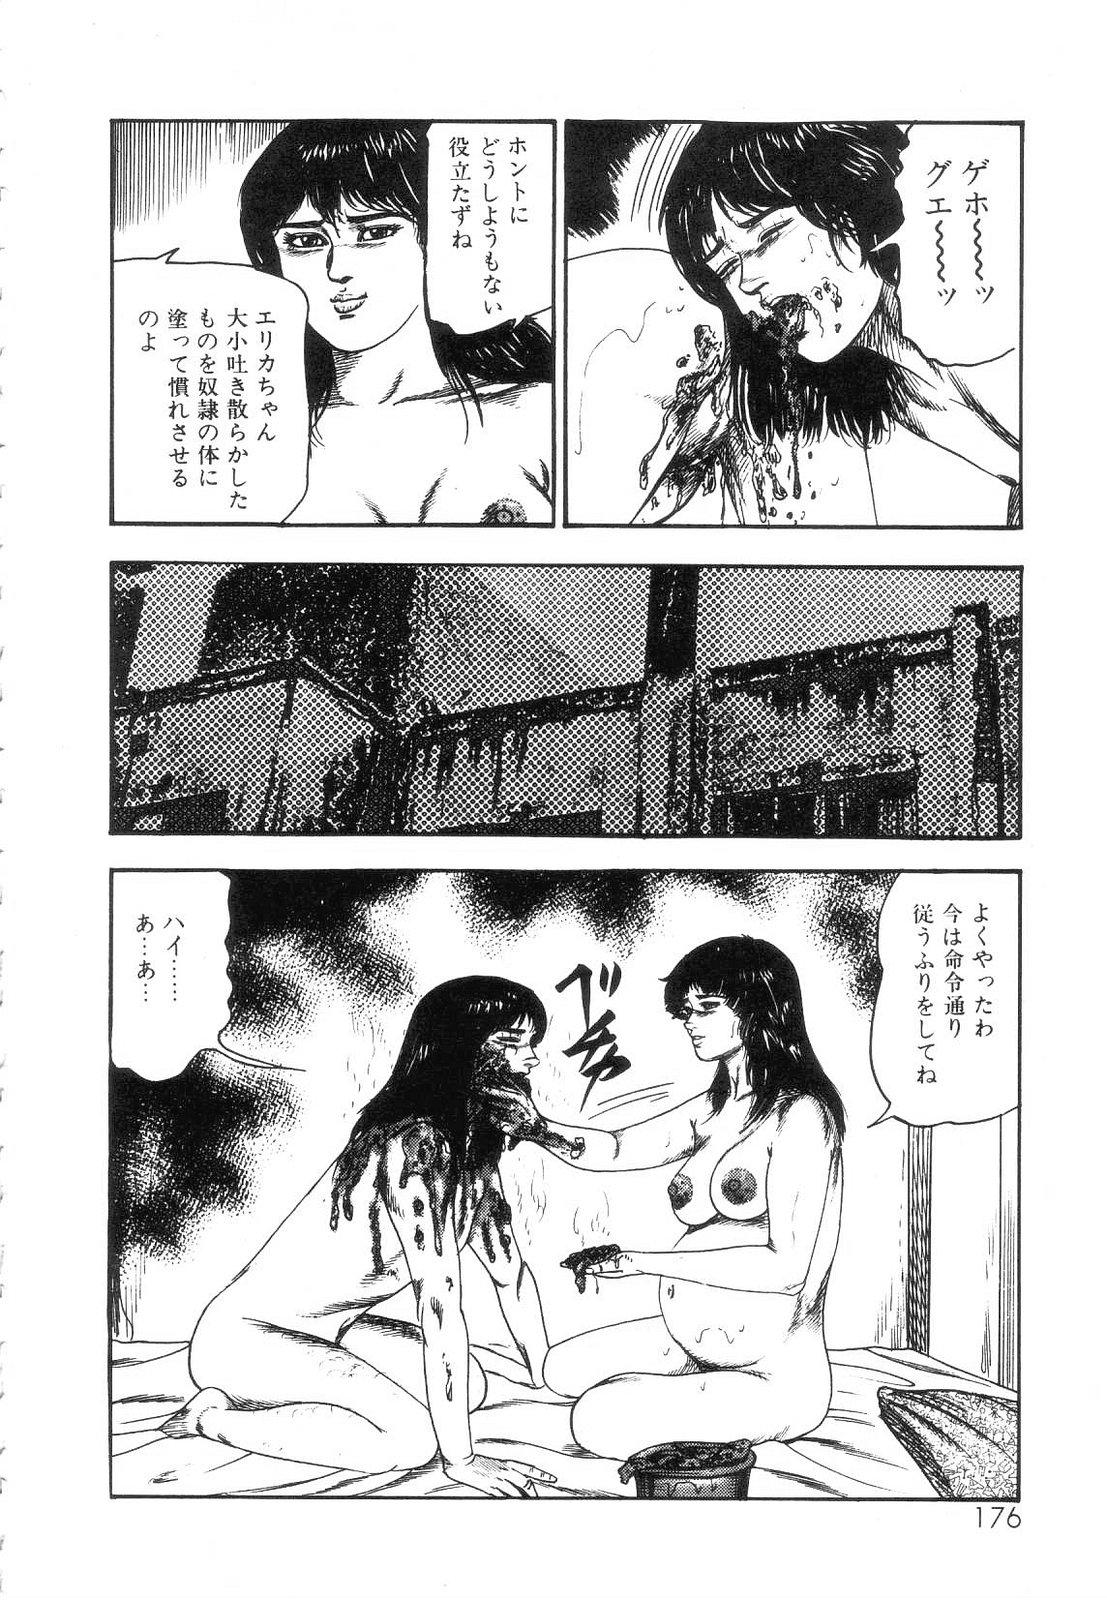 Shiro no Mokushiroku Vol. 5 - Ninshoujo Erika no Shou 177